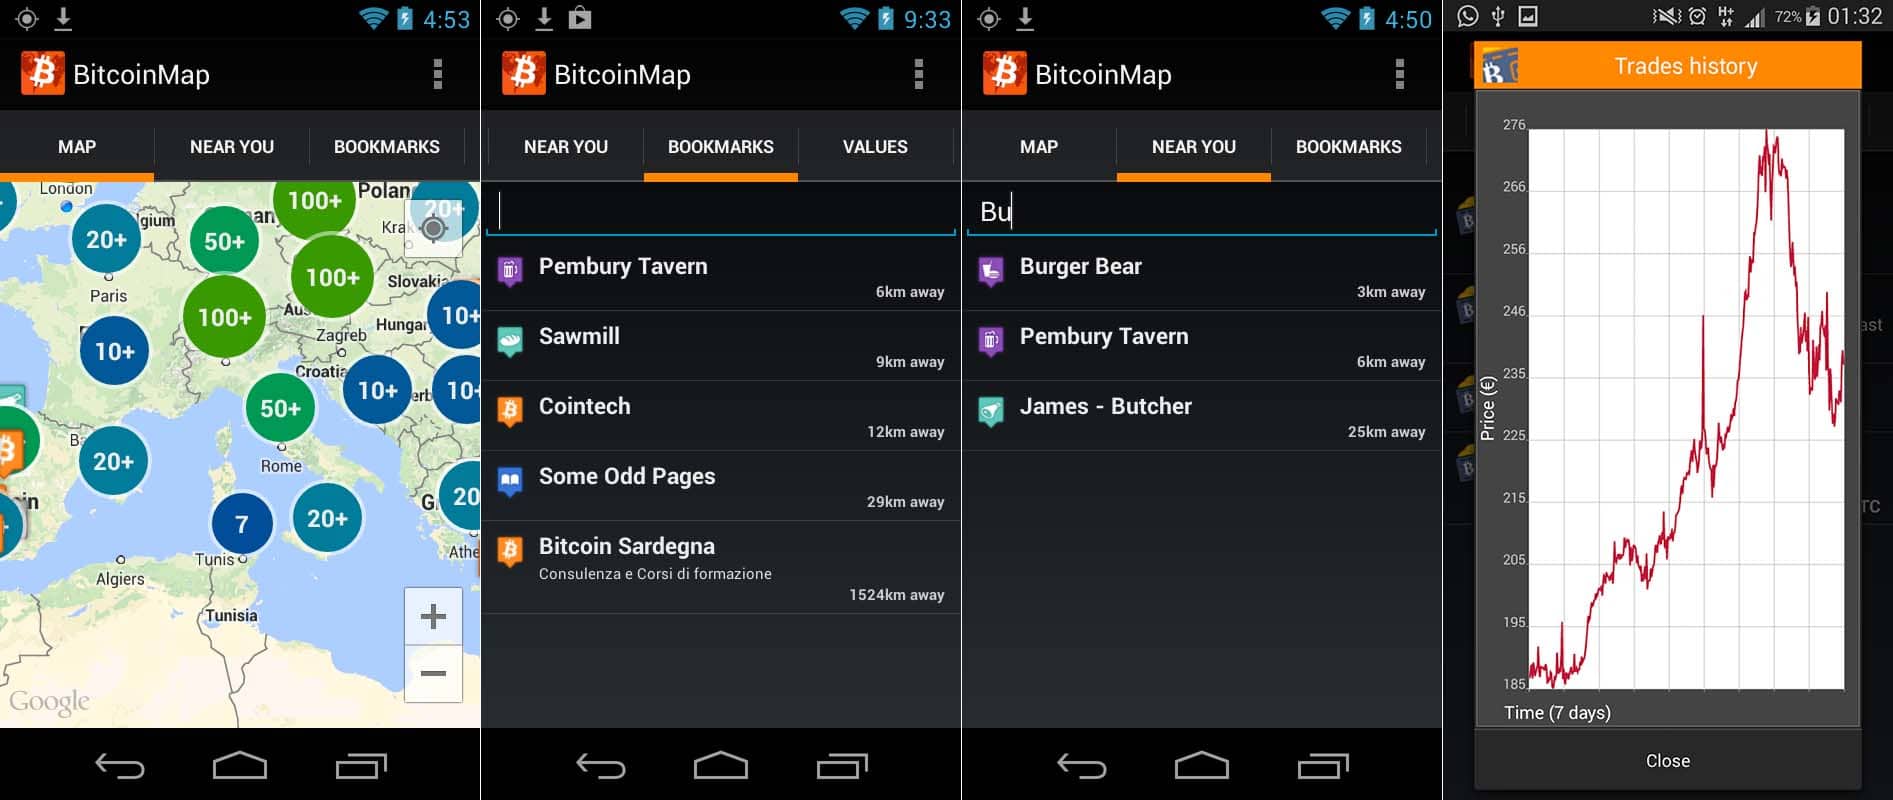 bitcoinmap app